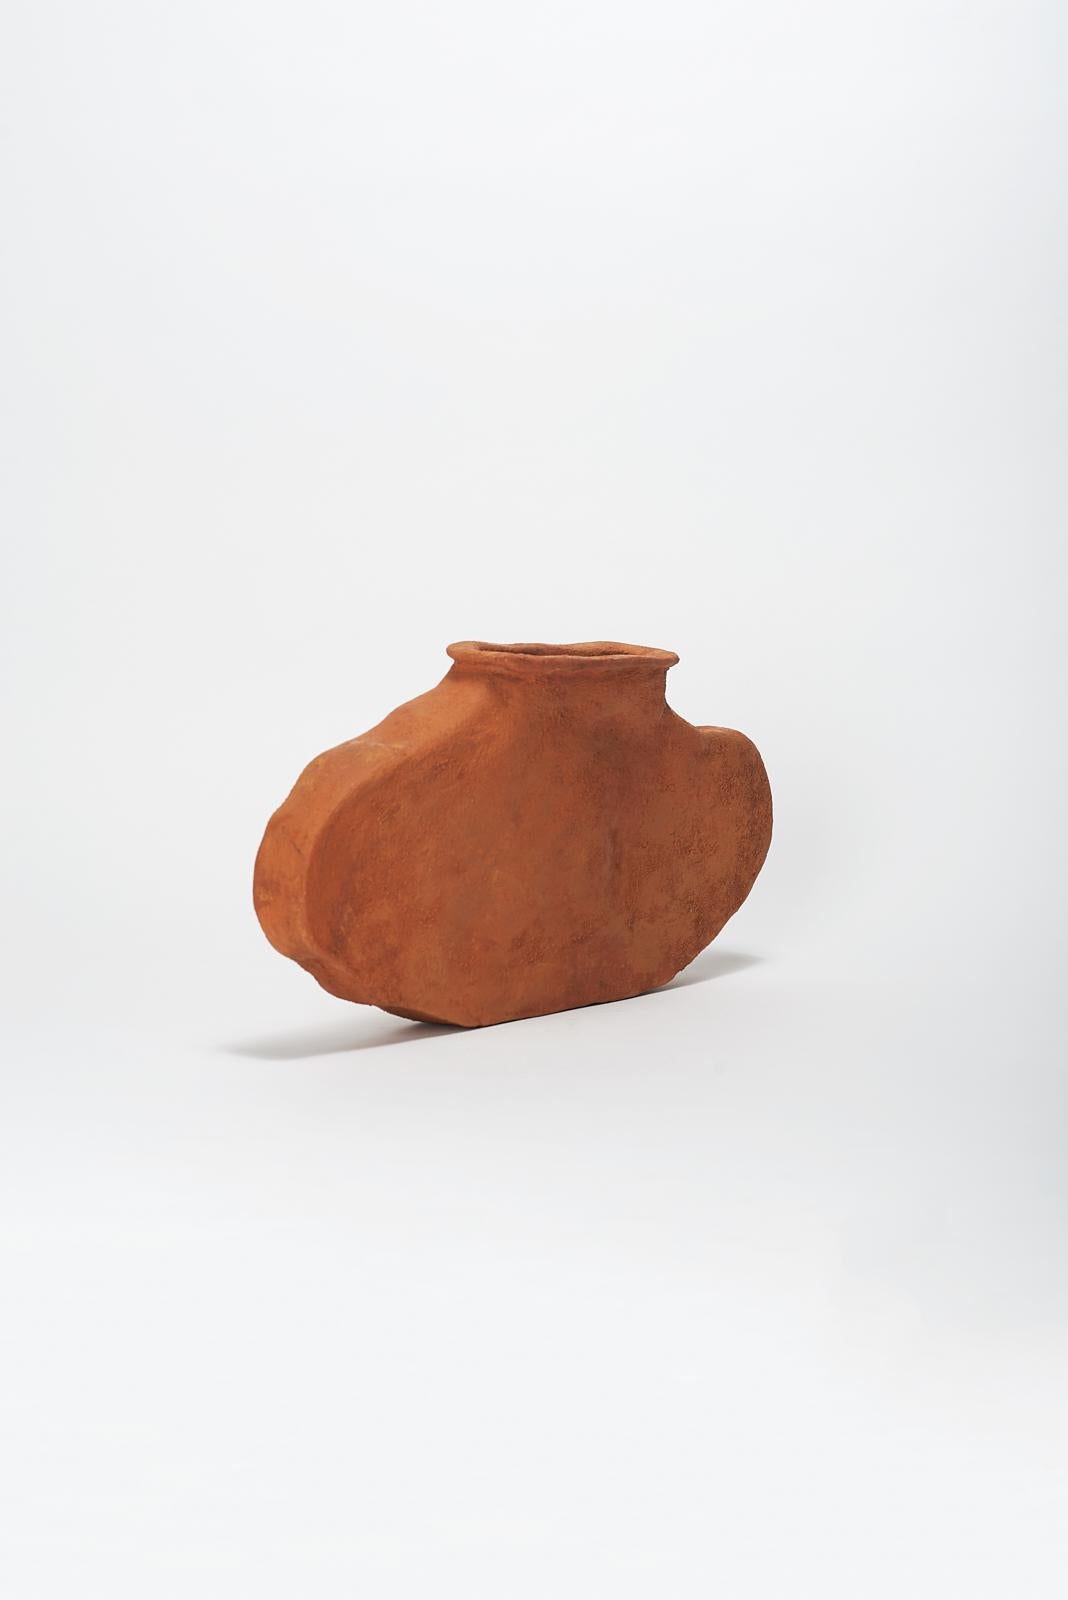 Dutch Lata Vase by Willem Van Hooff